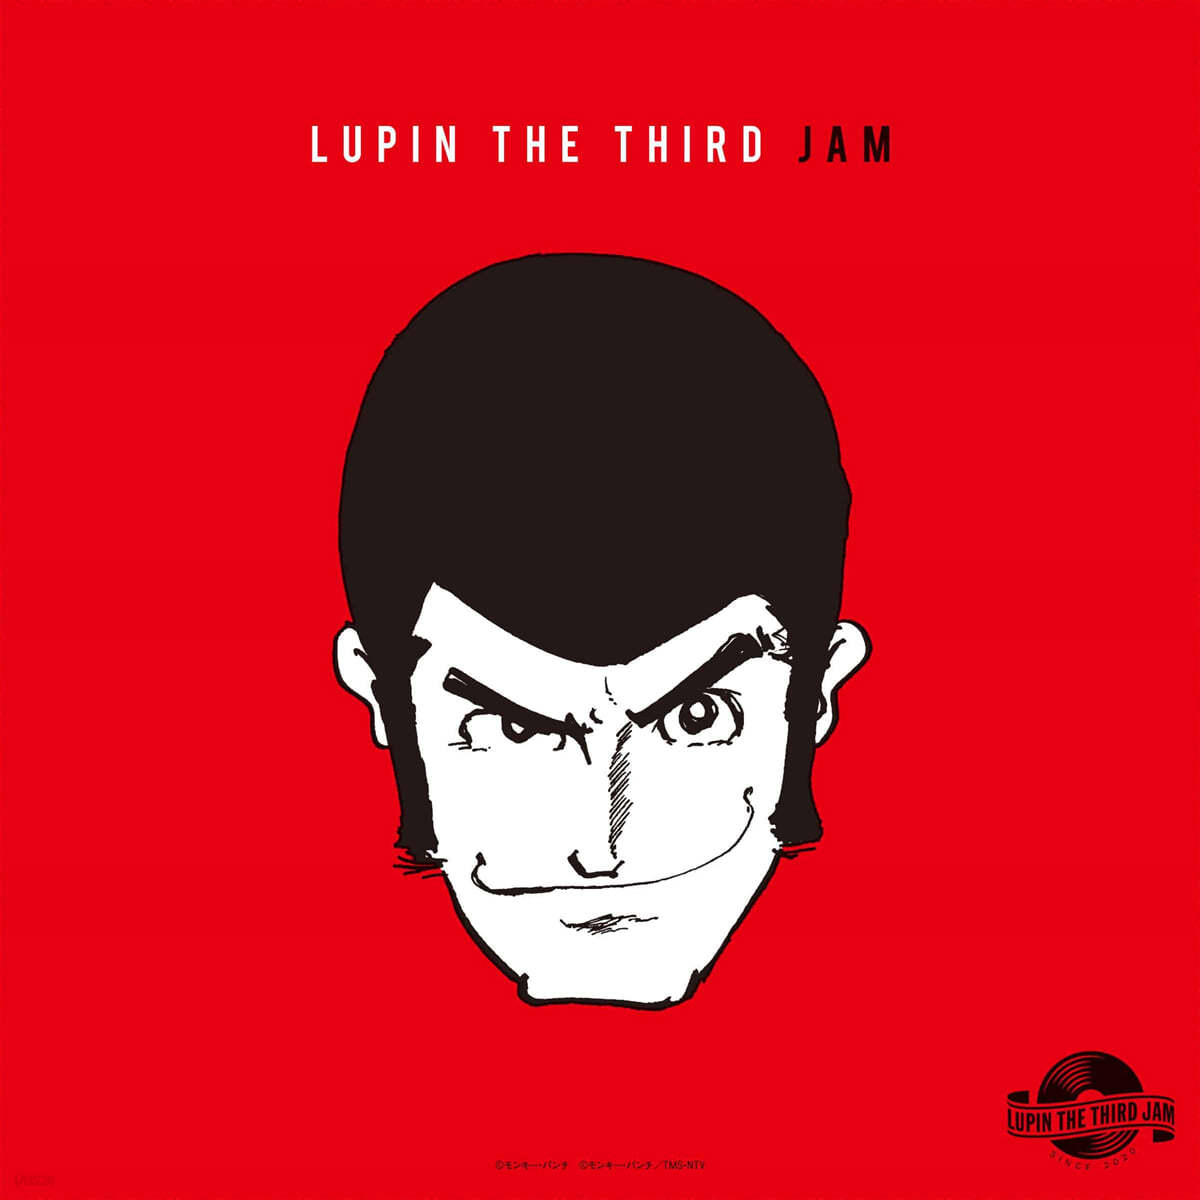 루팡 3세 잼 : 리믹스 애니메이션 음악 (Lupin The Third Jam-Remix OST by Lupin The Third Jam Crew) [LP] 